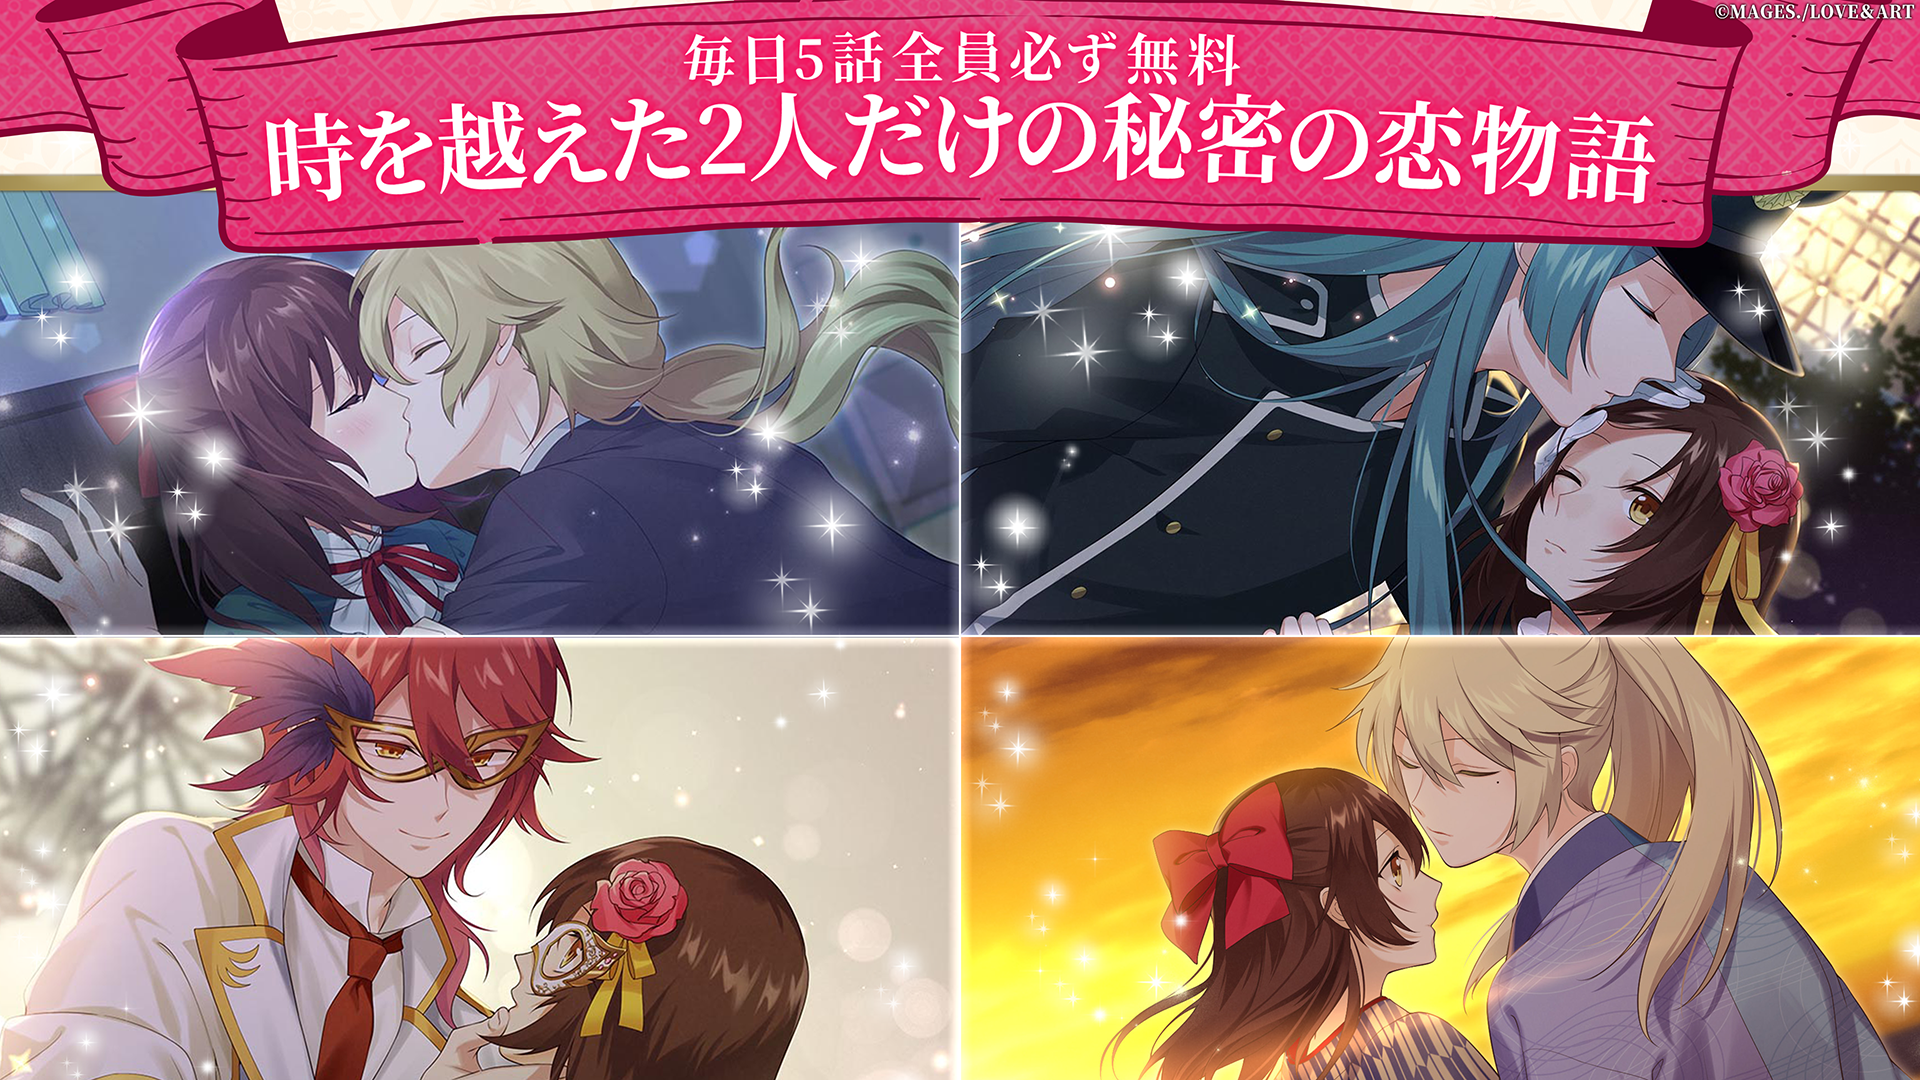 Screenshot 1 of Meikoi Meiji Tokyo Love Fairy～Haikara Date～ 1.3.4